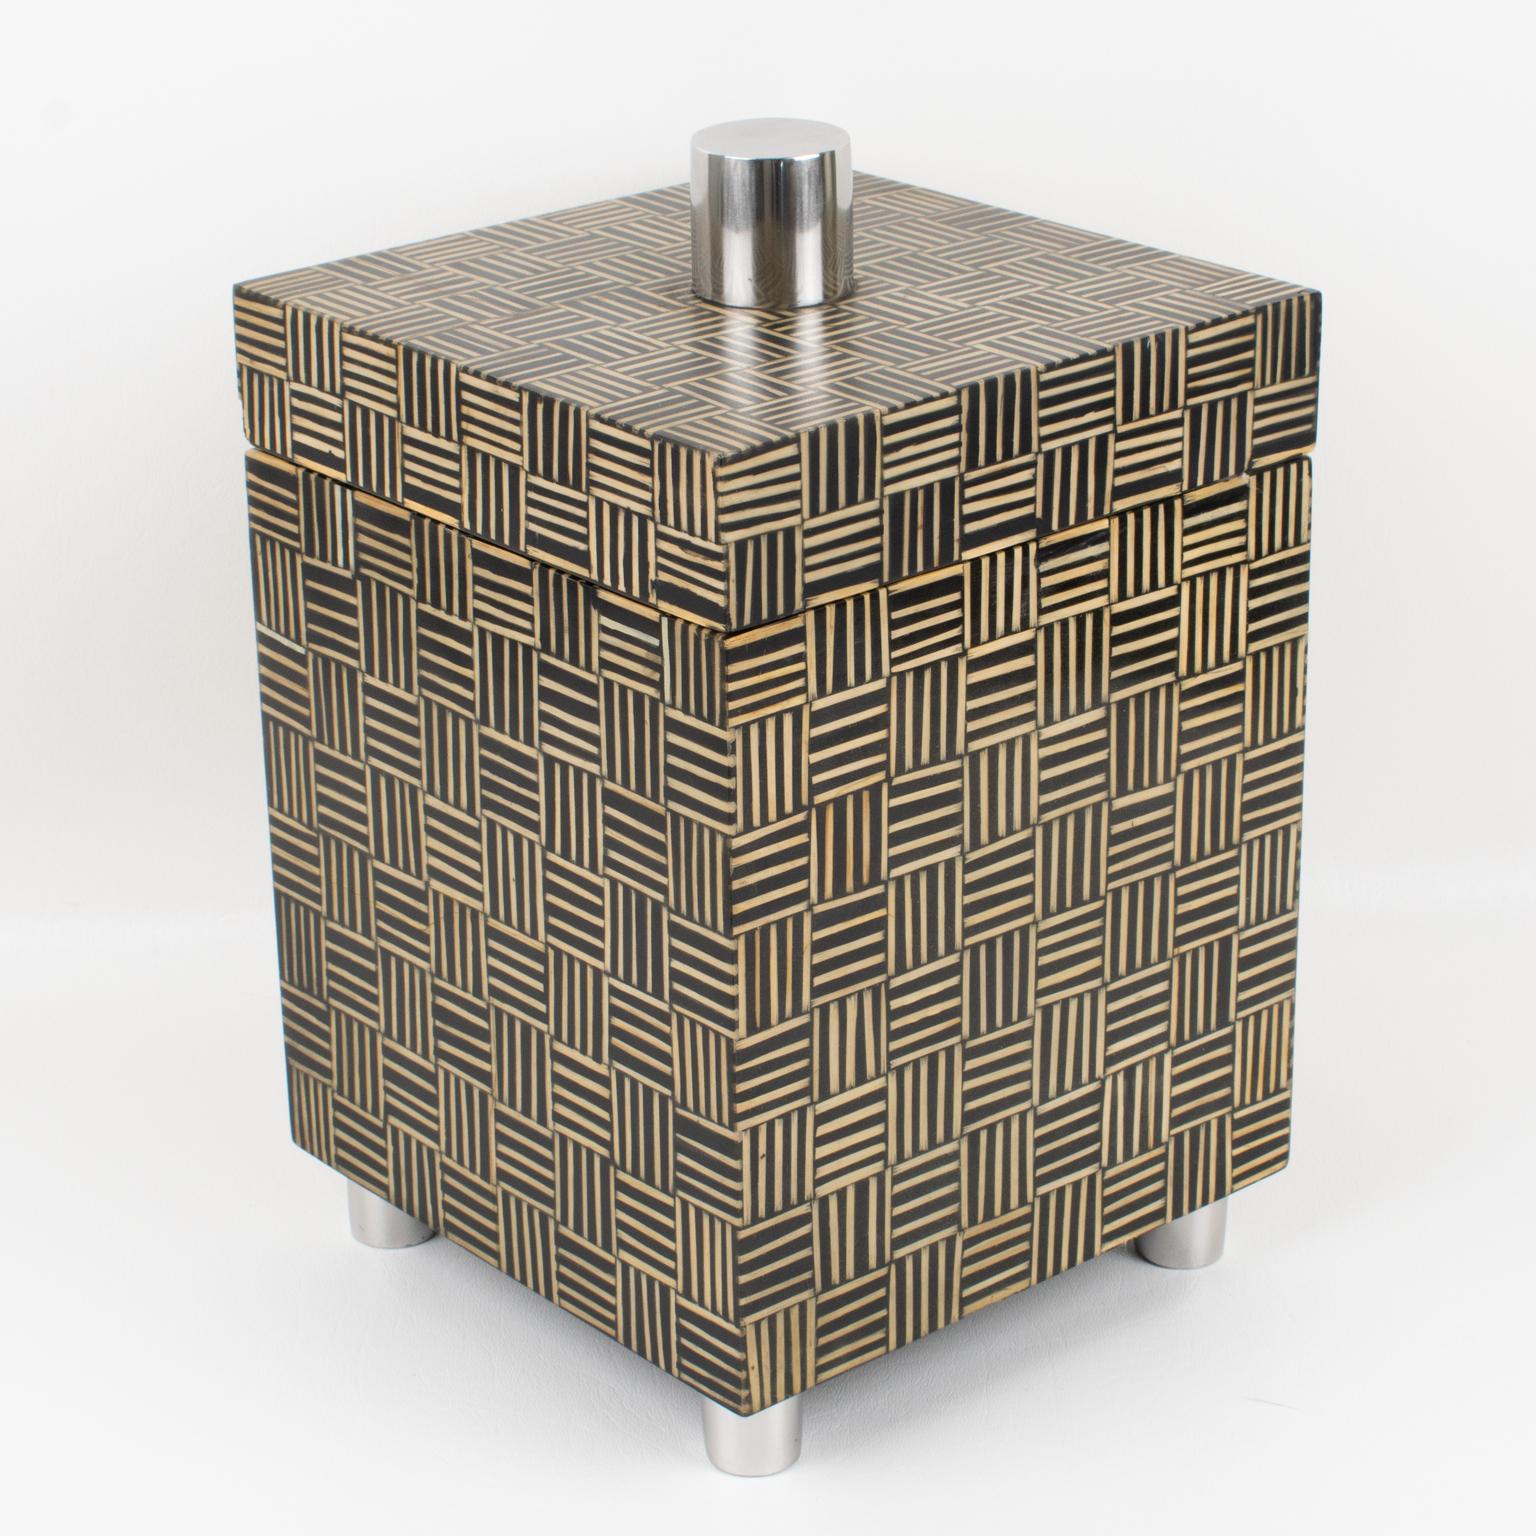 Diese bemerkenswerte modernistische Deko-Box stammt aus den 1970er Jahren. Mit seiner hohen Struktur zieht er die Aufmerksamkeit aller auf sich. Die Kiste hat eine quadratische Form und ist innen aus massivem Tropenholz gefertigt. Das Besondere an